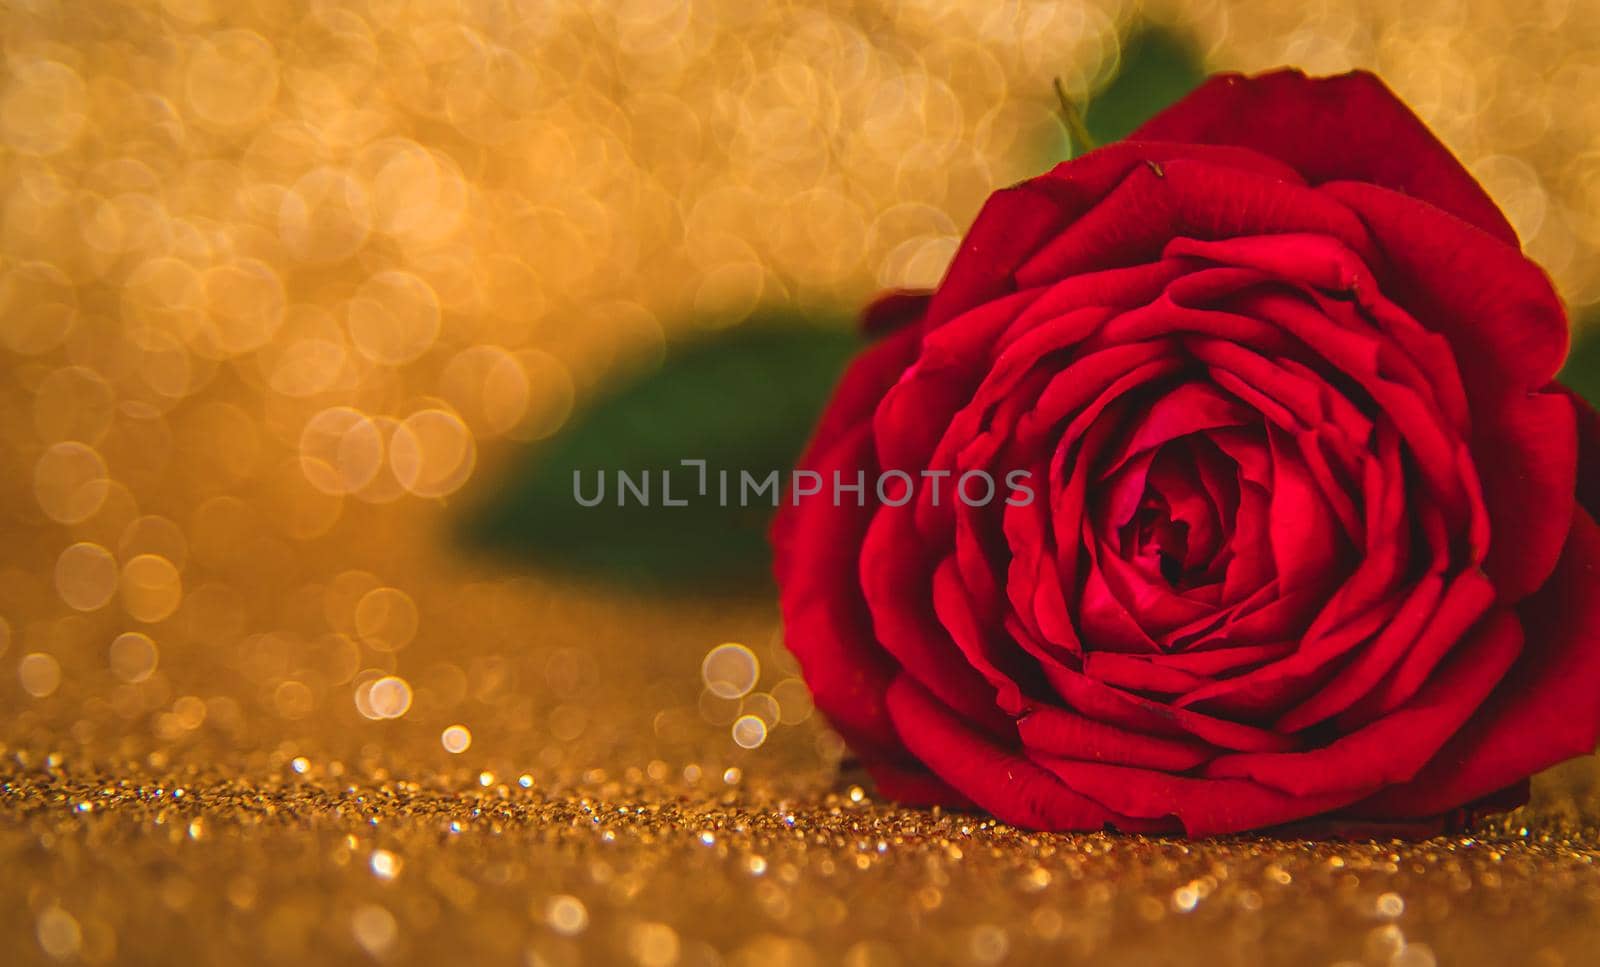 Rose on a shiny background. Selective focus. by yanadjana